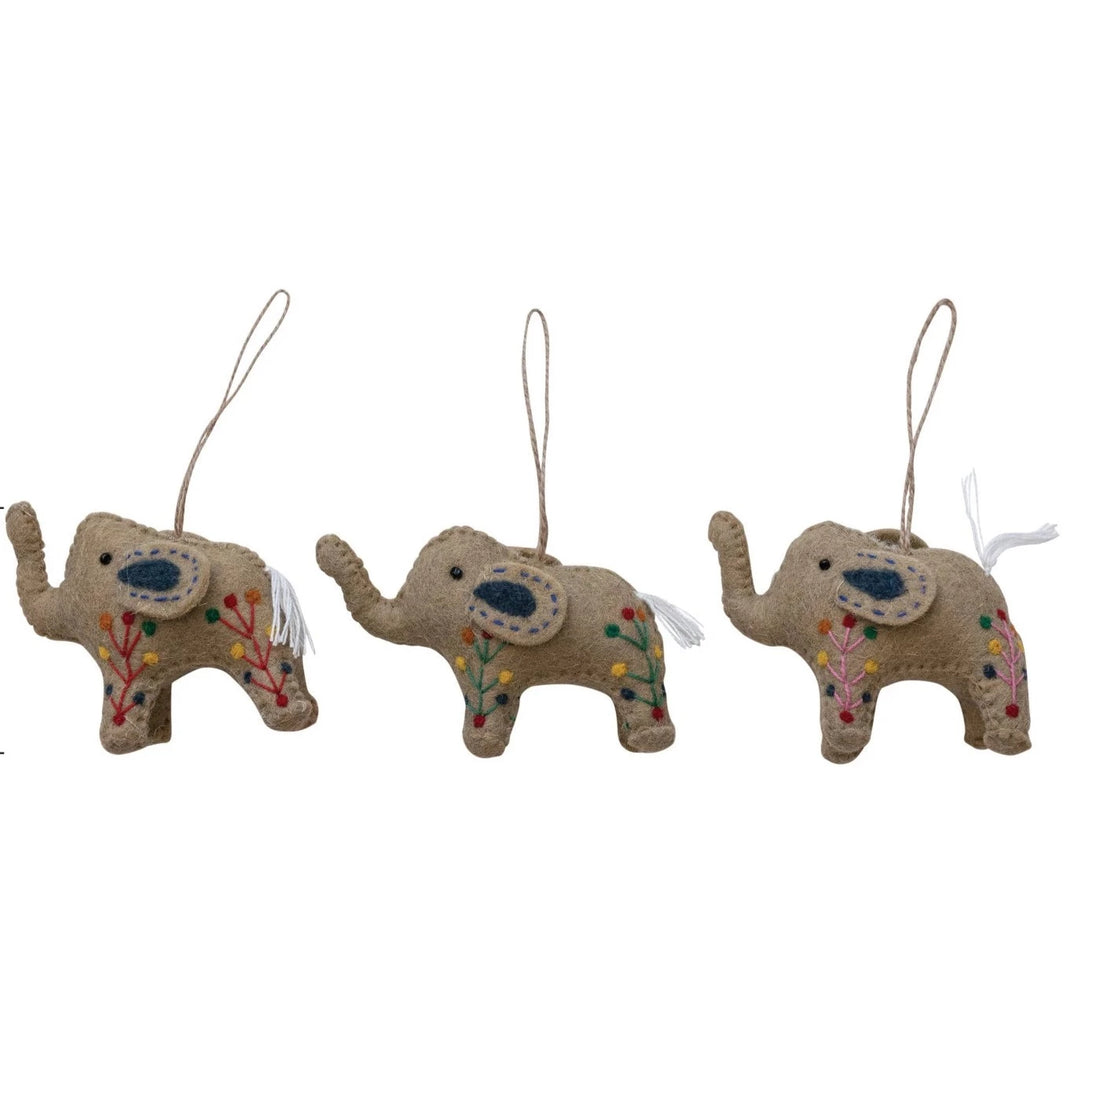 Wool Felt Elephant Ornaments, Set of 3